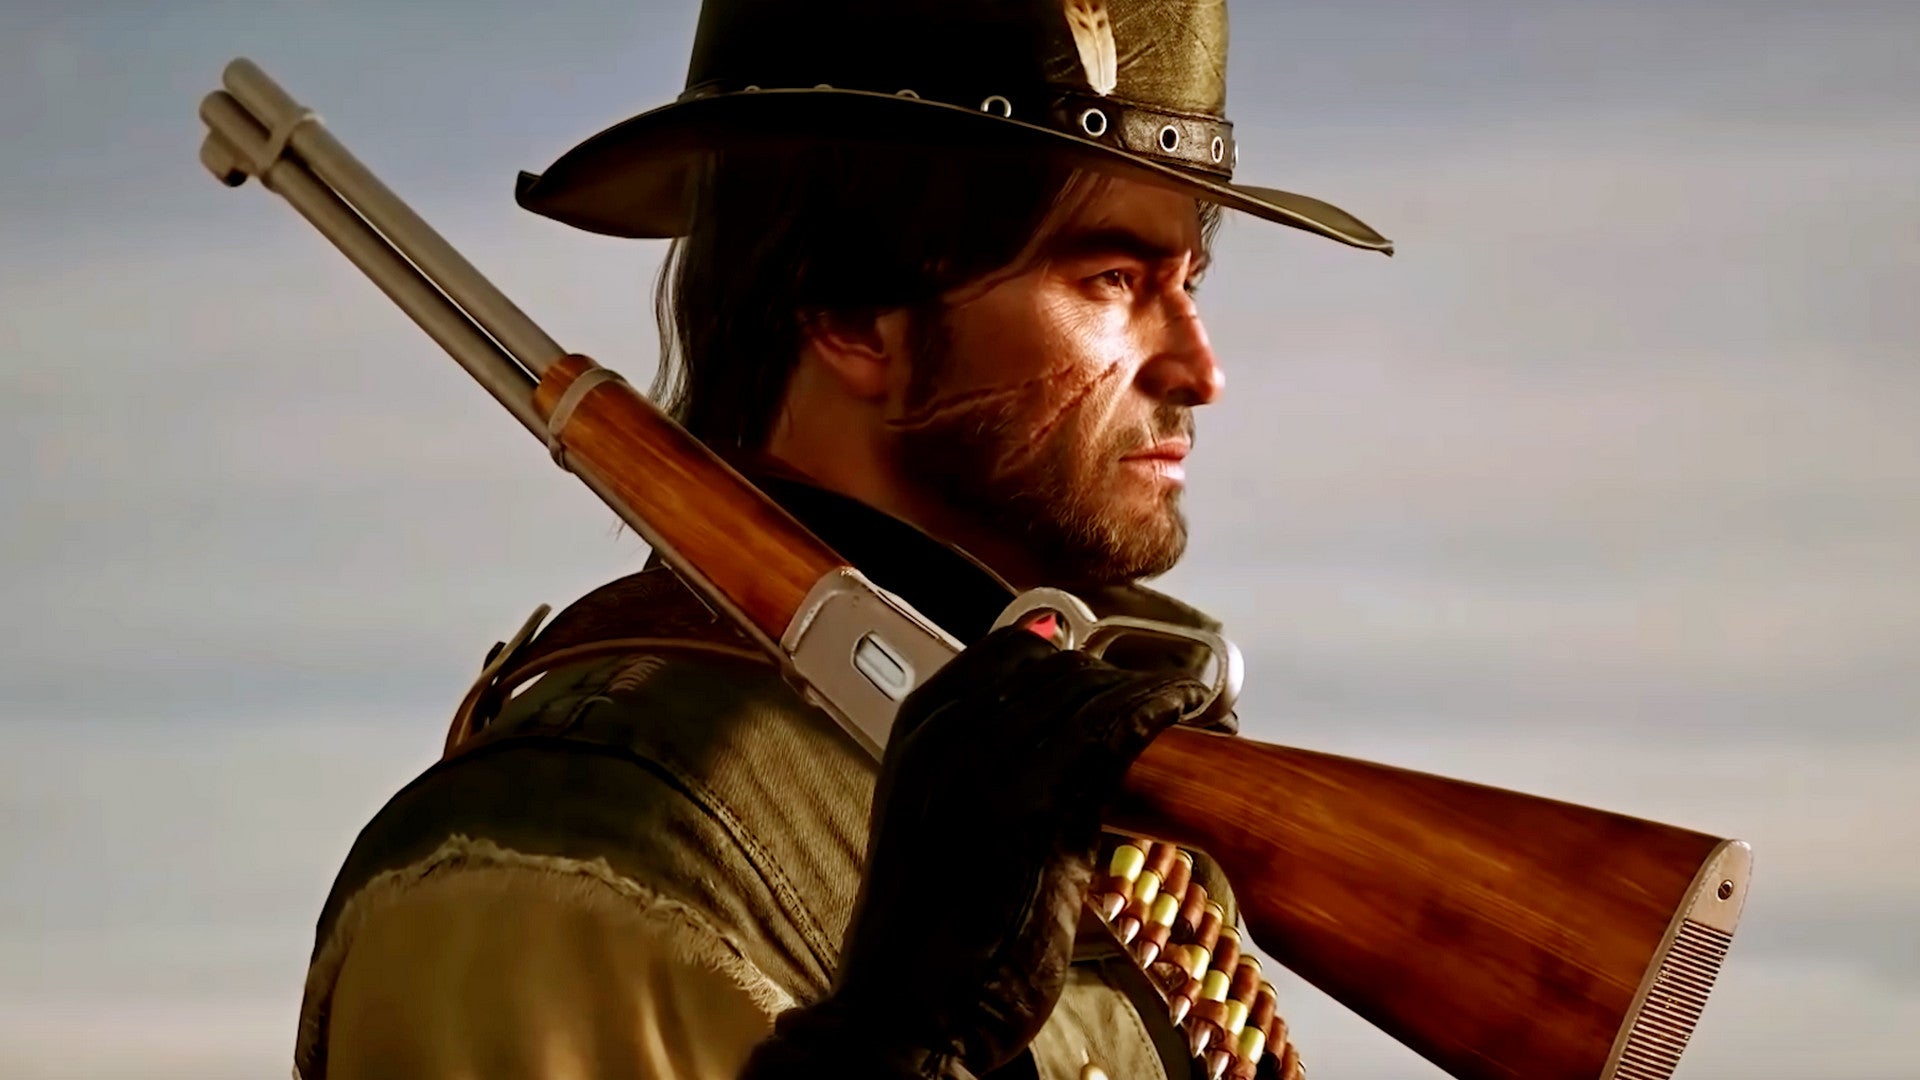 Bilder zu Red Dead Redemption: Wie es mit der Unreal Engine 5 aussehen könnte